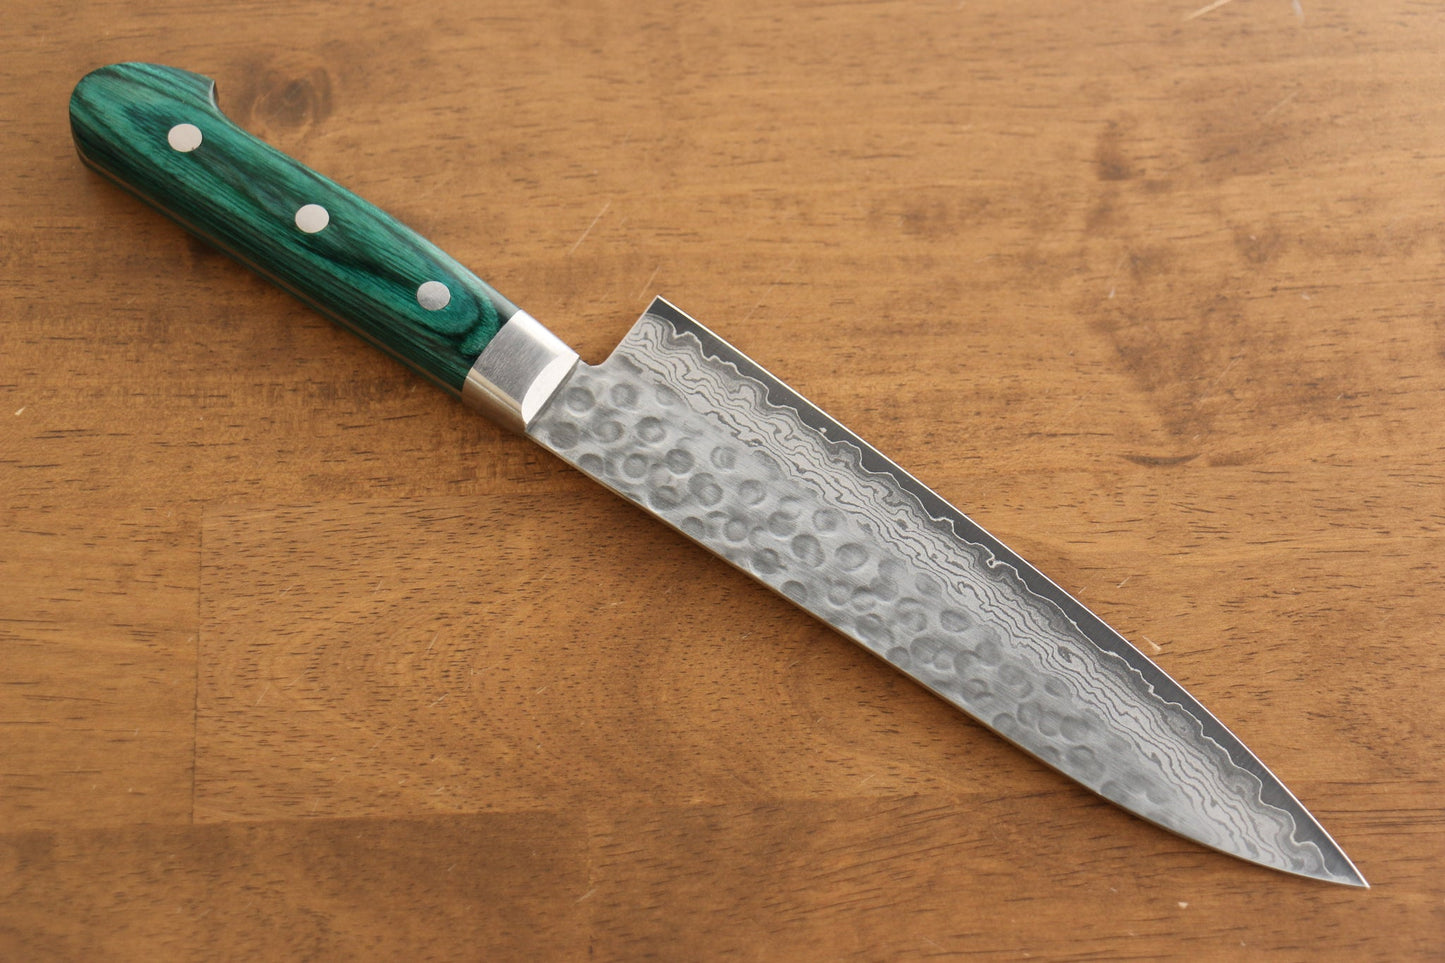 Hochwertiges japanisches Messer – Sakai Takayuki Mehrzweckmesser Gyuto Damaststahl VG10 17 Lagen 180 mm